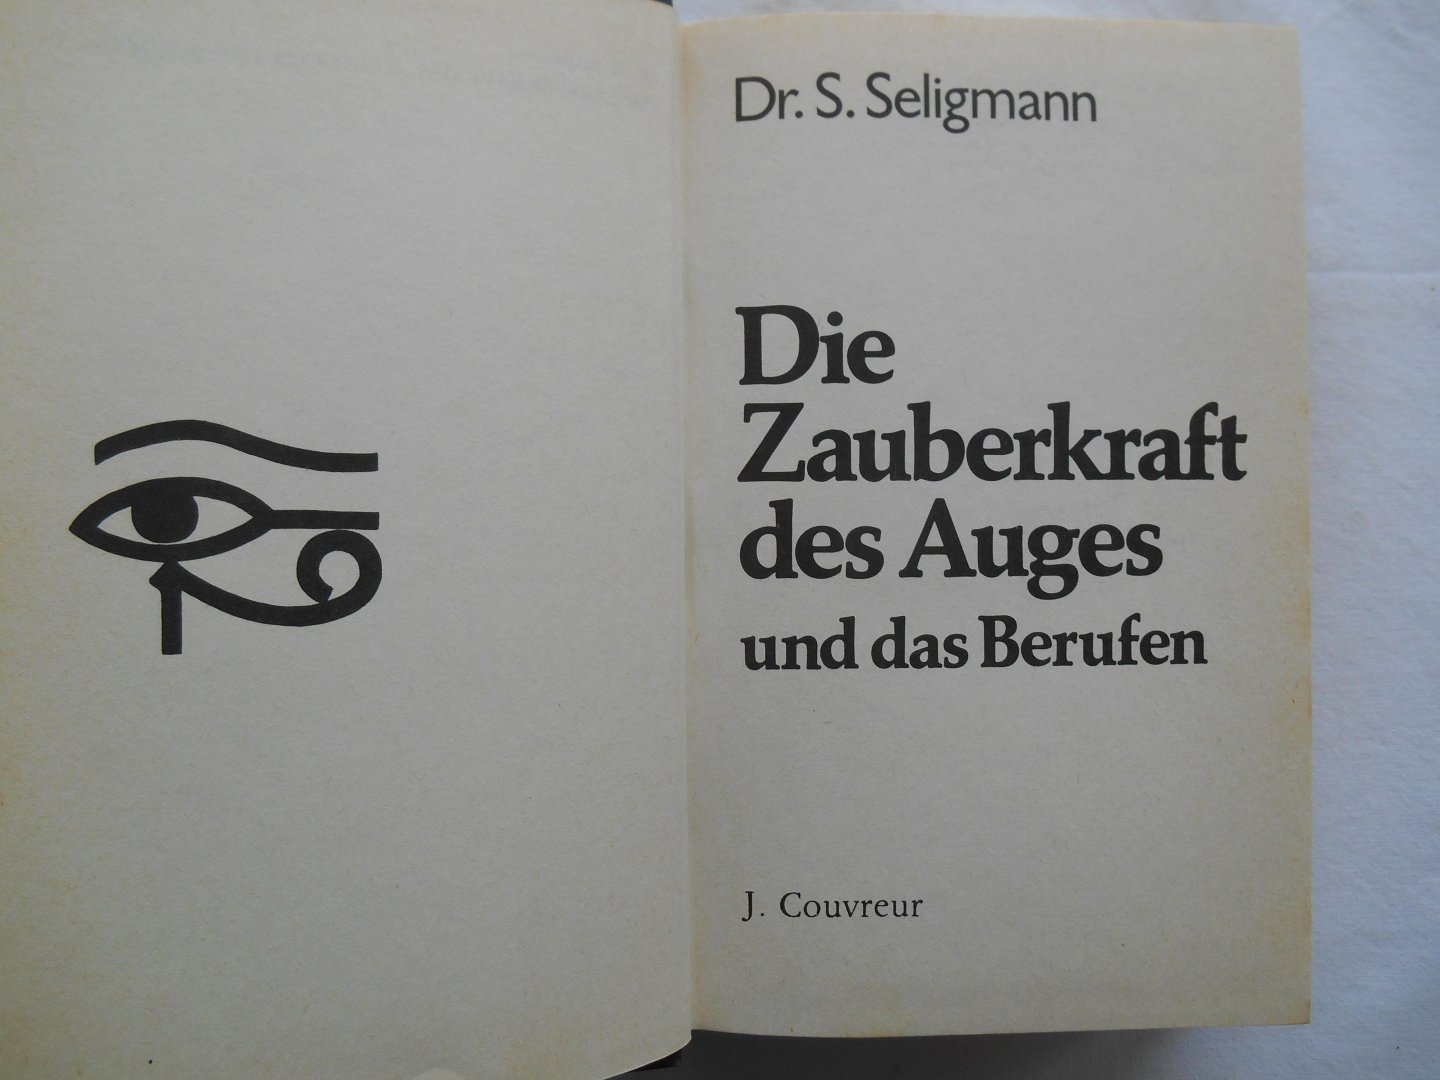 Seligmann, Dr. S. - Die Zauberkraft des Auges und das Berufen